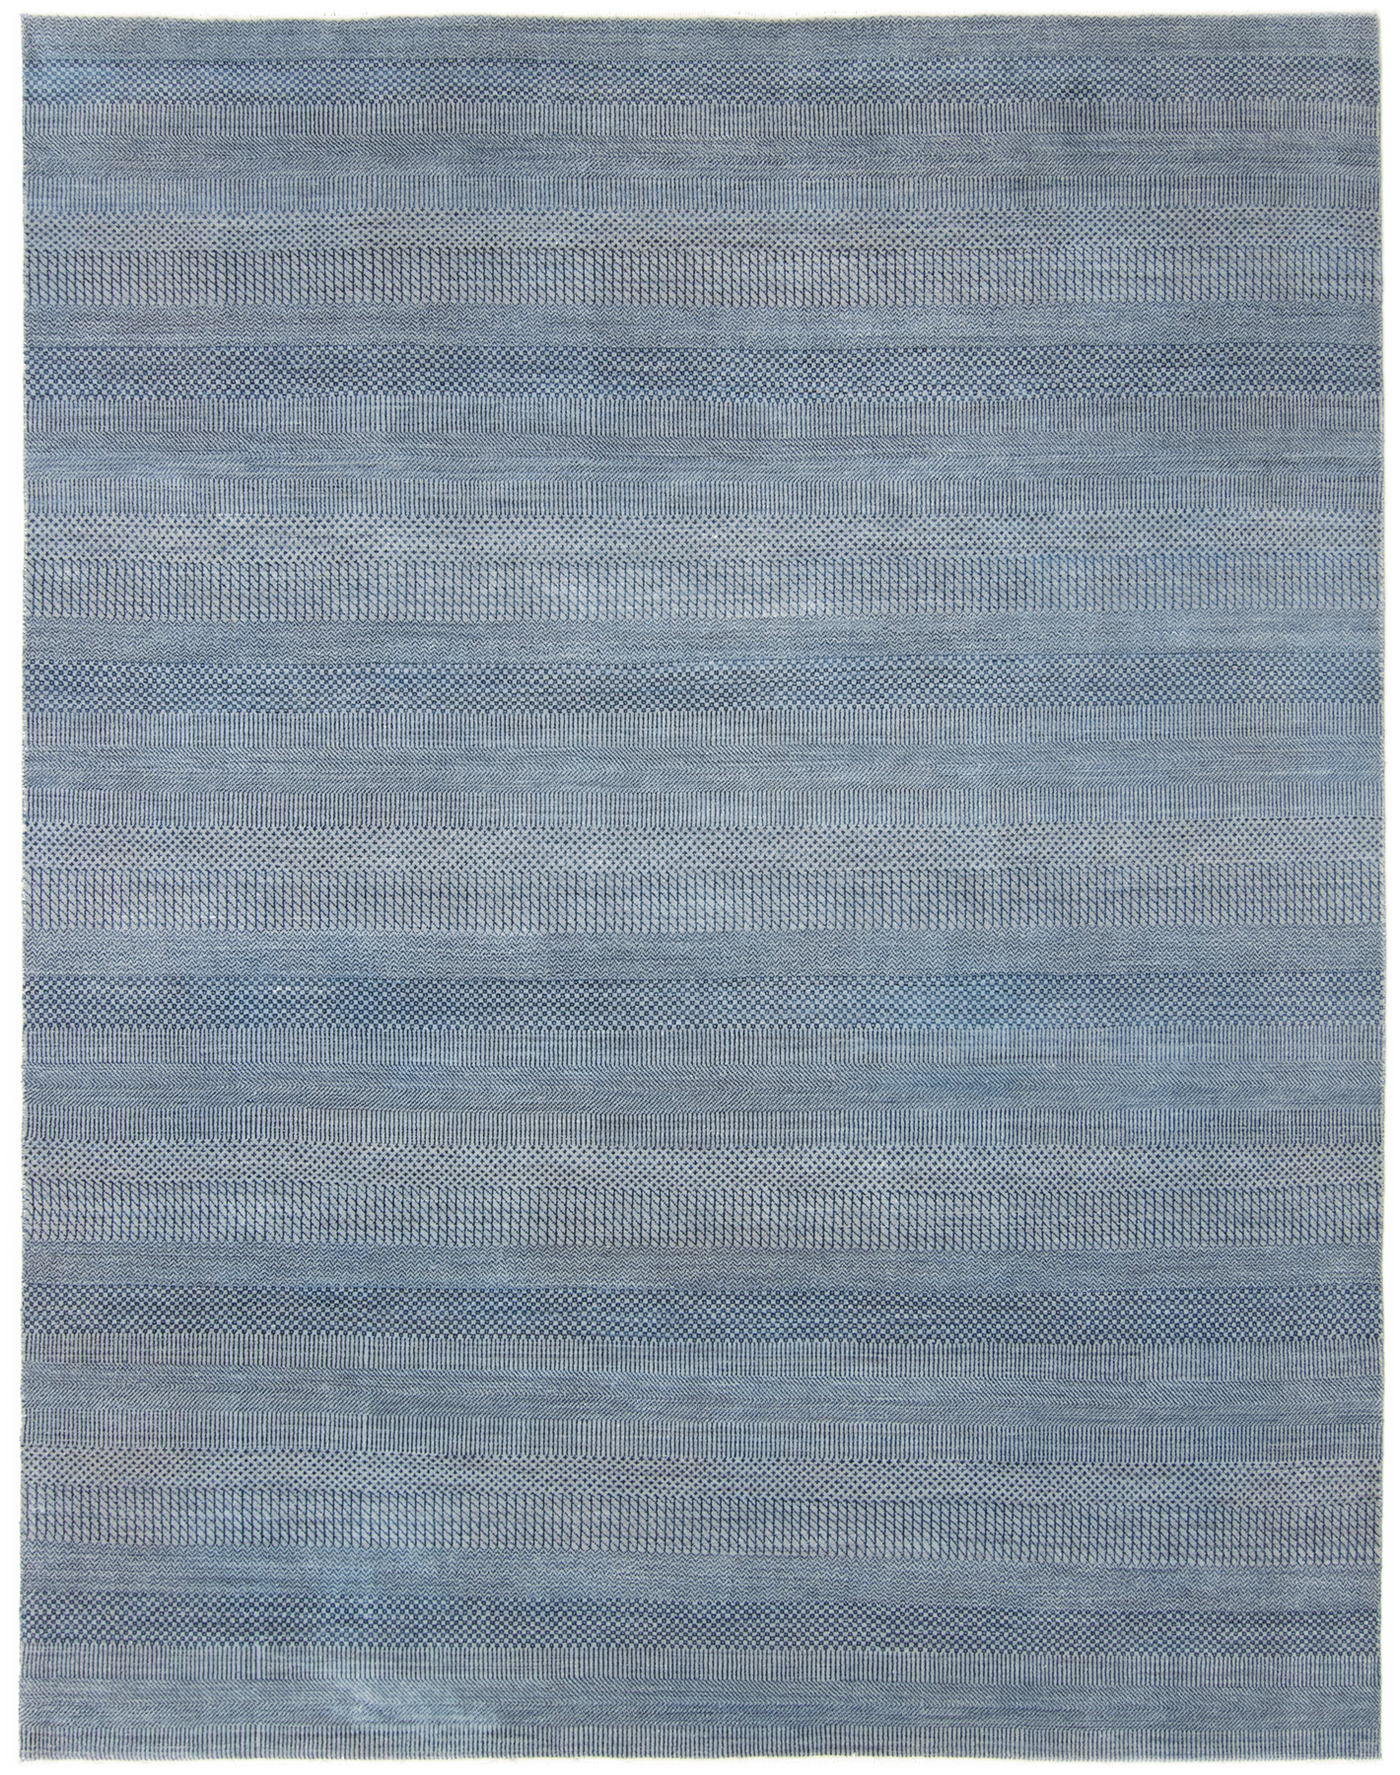 Blau Grau Silber Kariert Teppich Wohnzimmerteppich Schlafzimmerteppich Designteppich